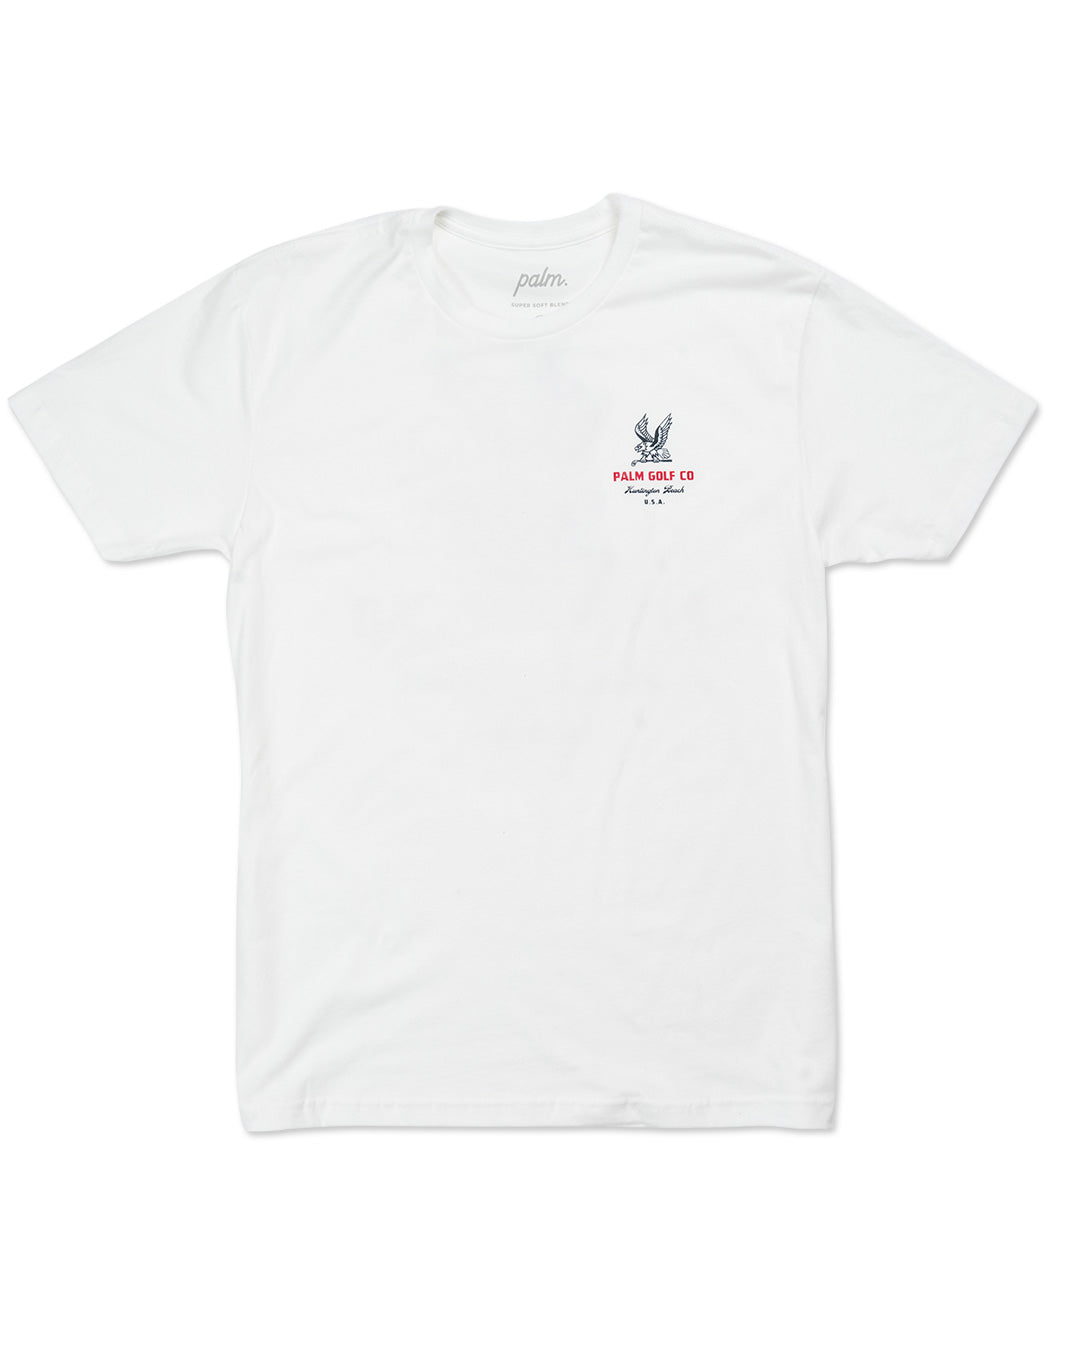 Palm Golf Co. Soarin' T-Shirt